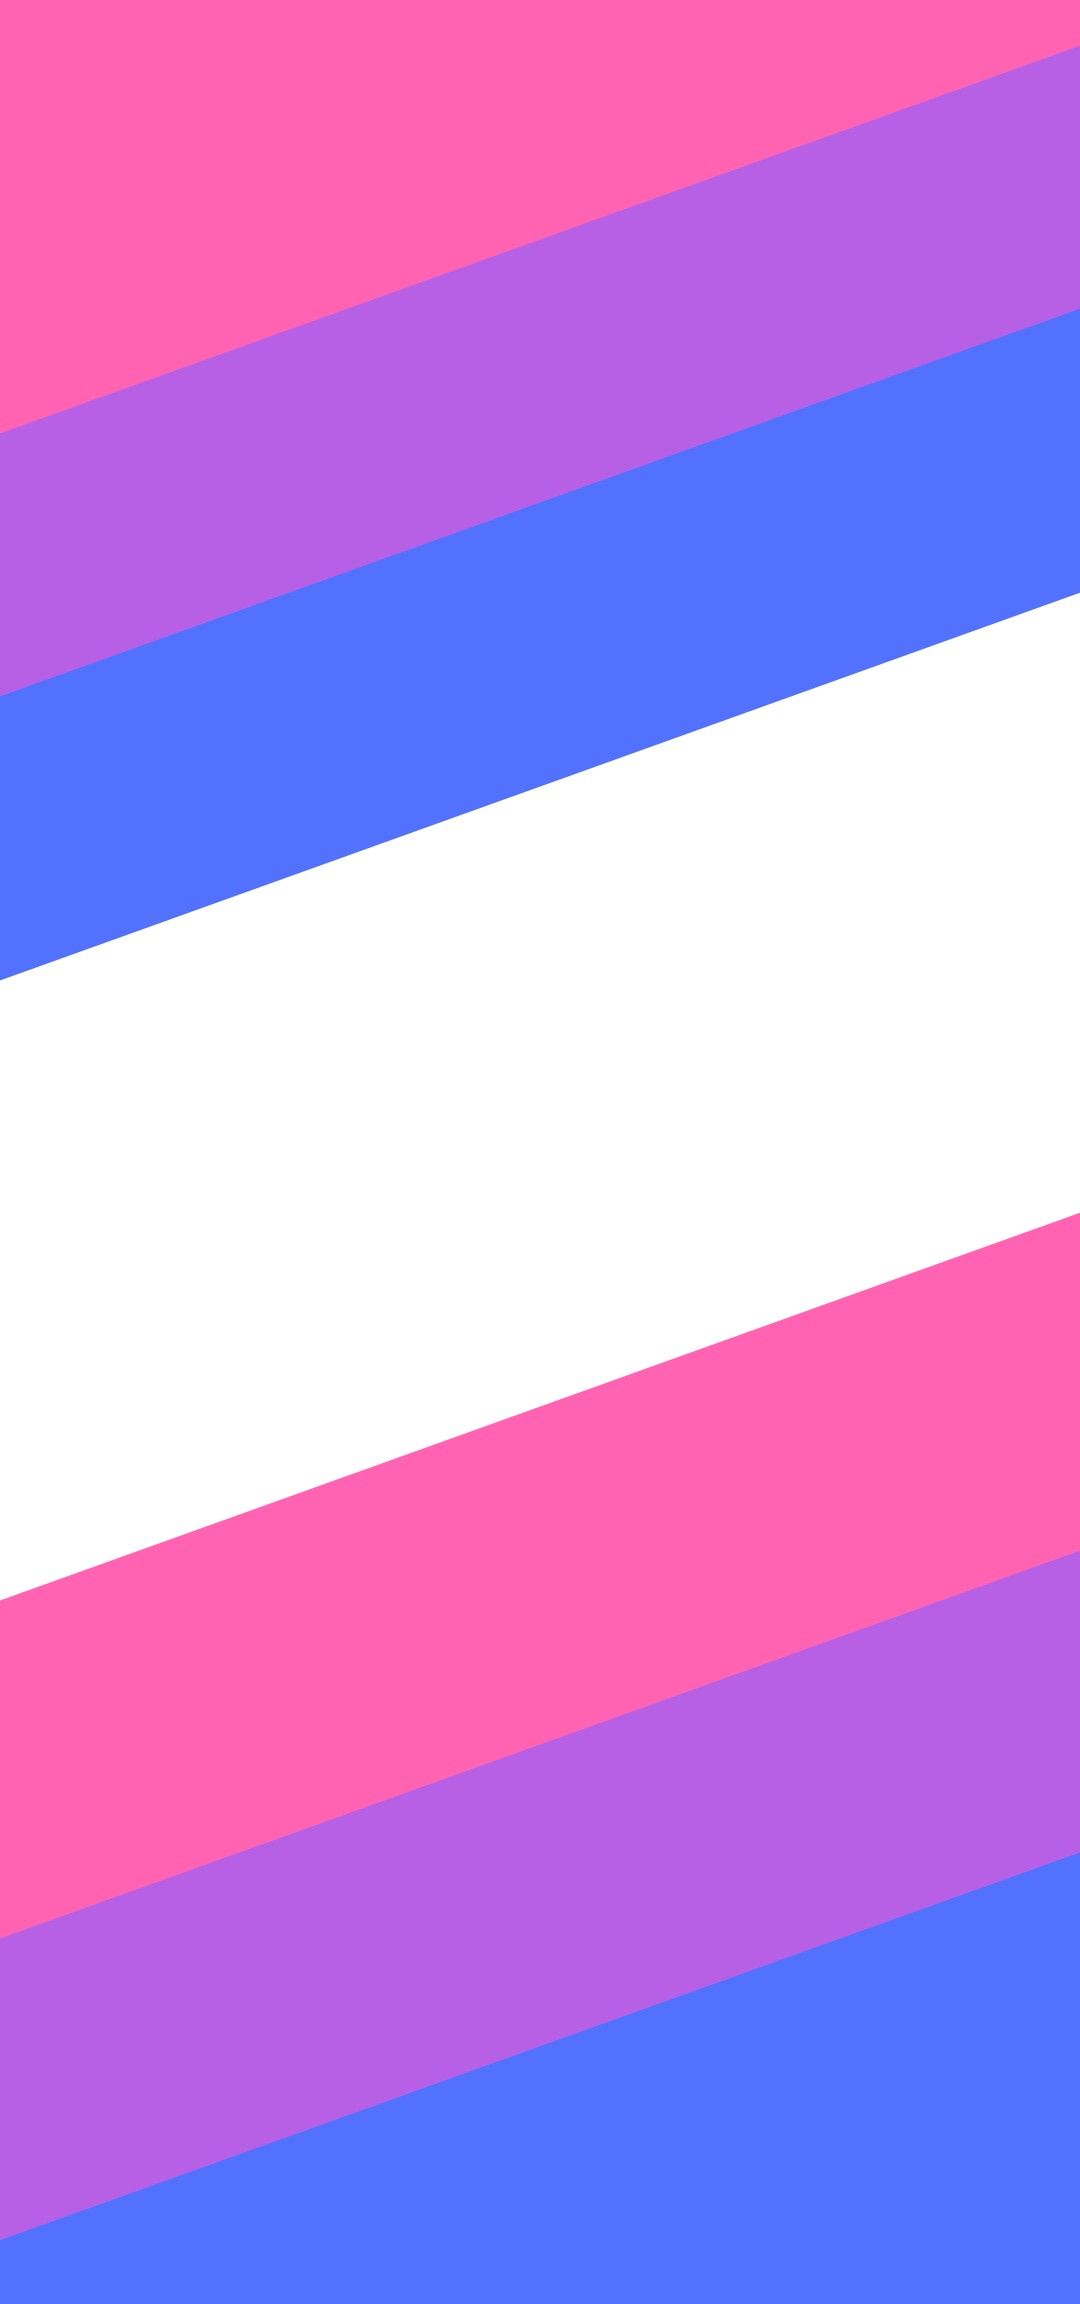 Bi : Free download Bi Pride Flag Wallpapers Top Bi Pride Flag : To